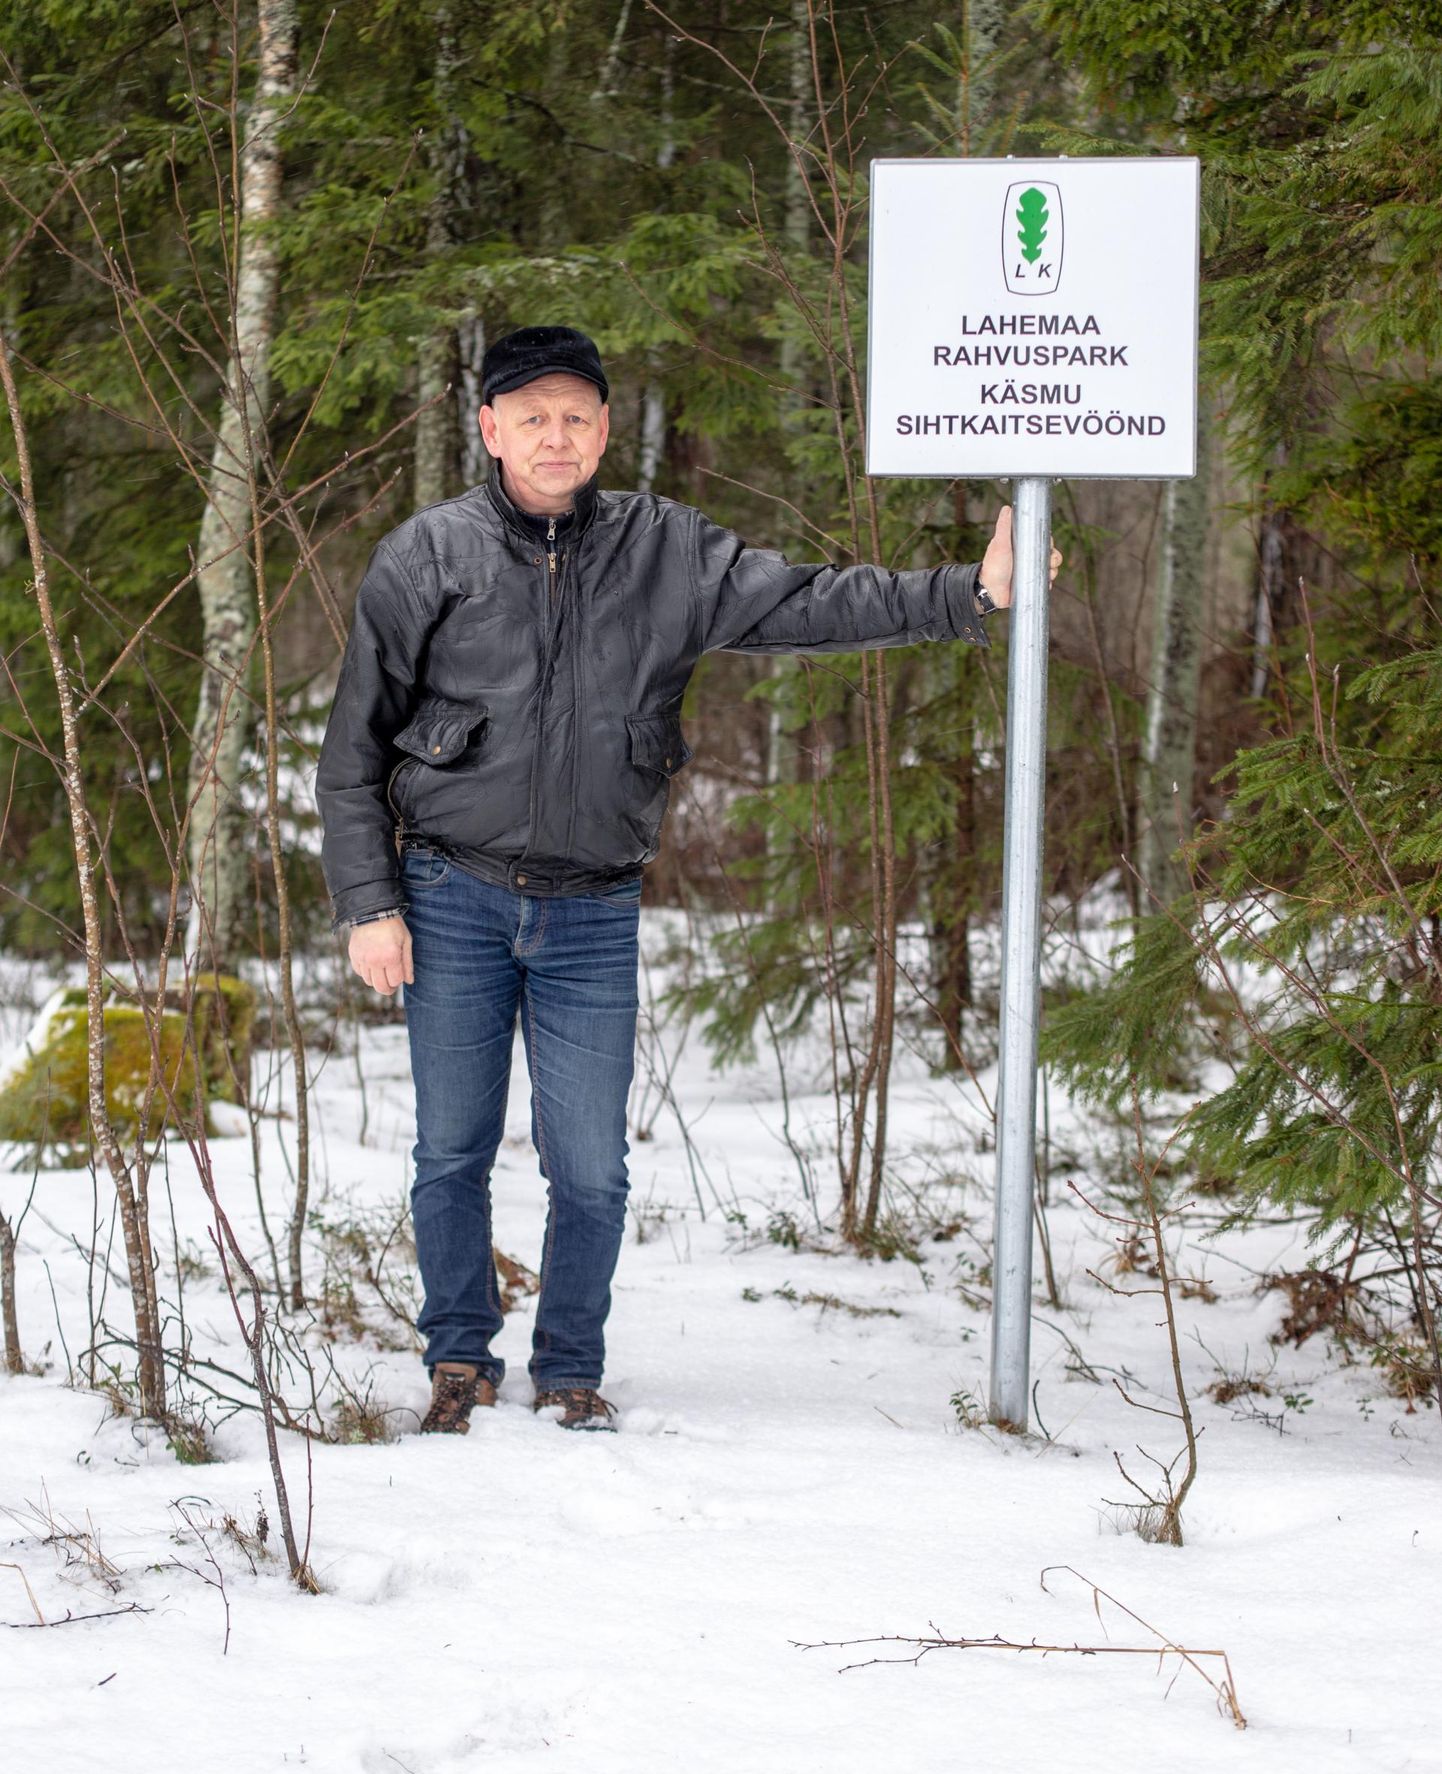 Virko Sirkeli sõnul ei taga Lahemaa rahvuspark täna Käsmu looduse säilimist.